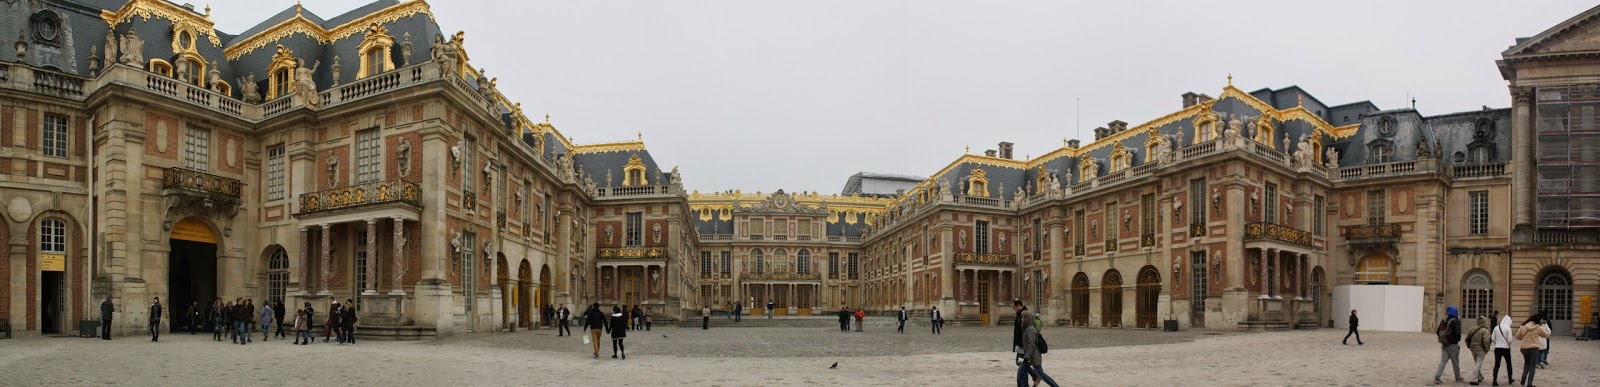 Palacio de Versalles 2.JPG